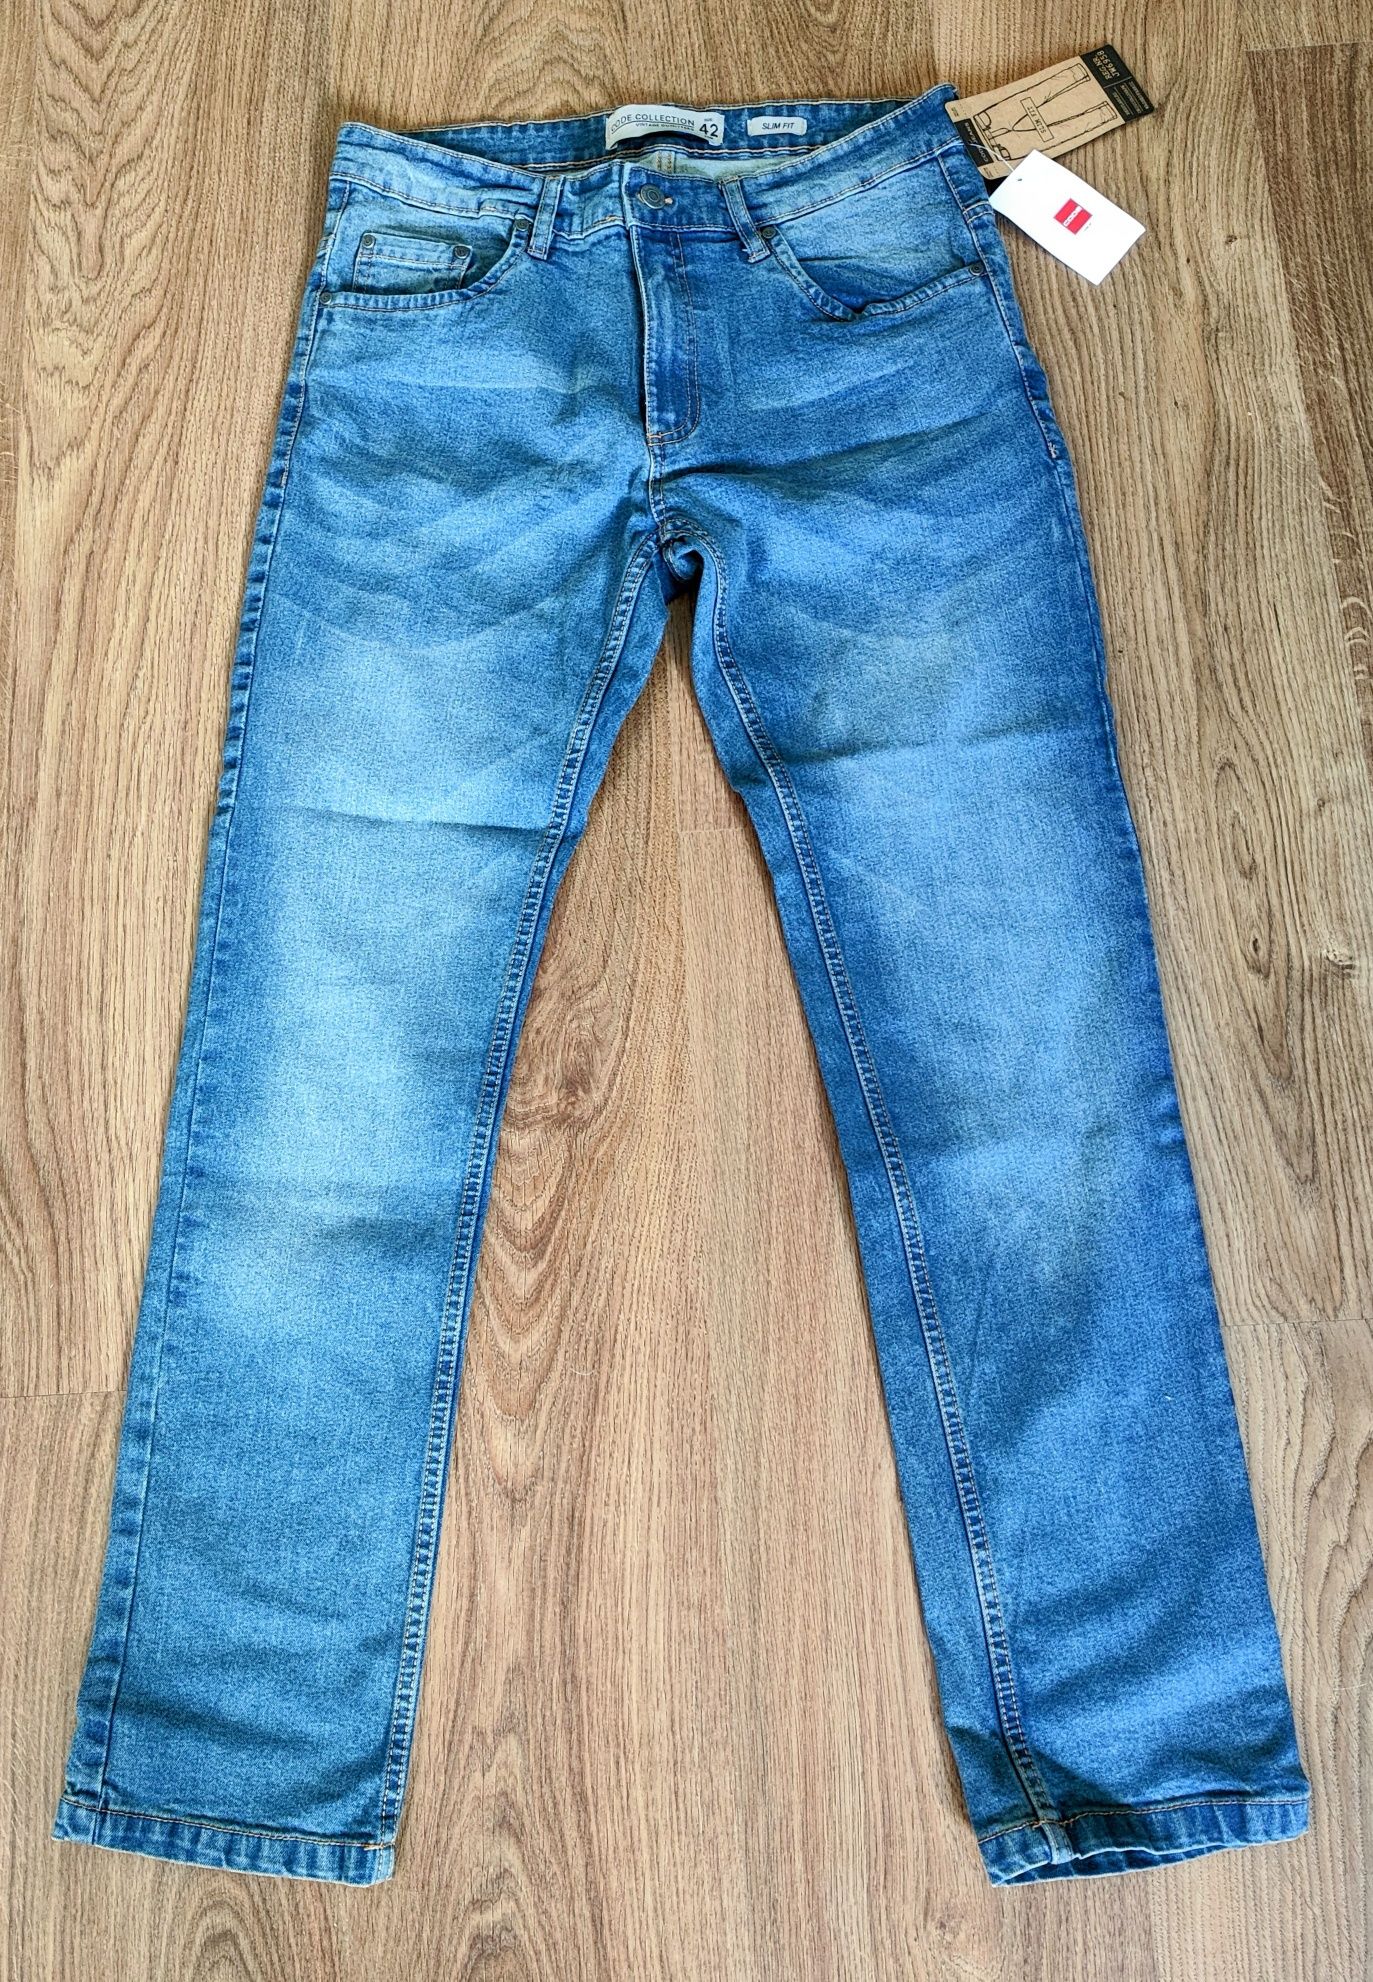 Jeans CODE SlimFit (N°42)